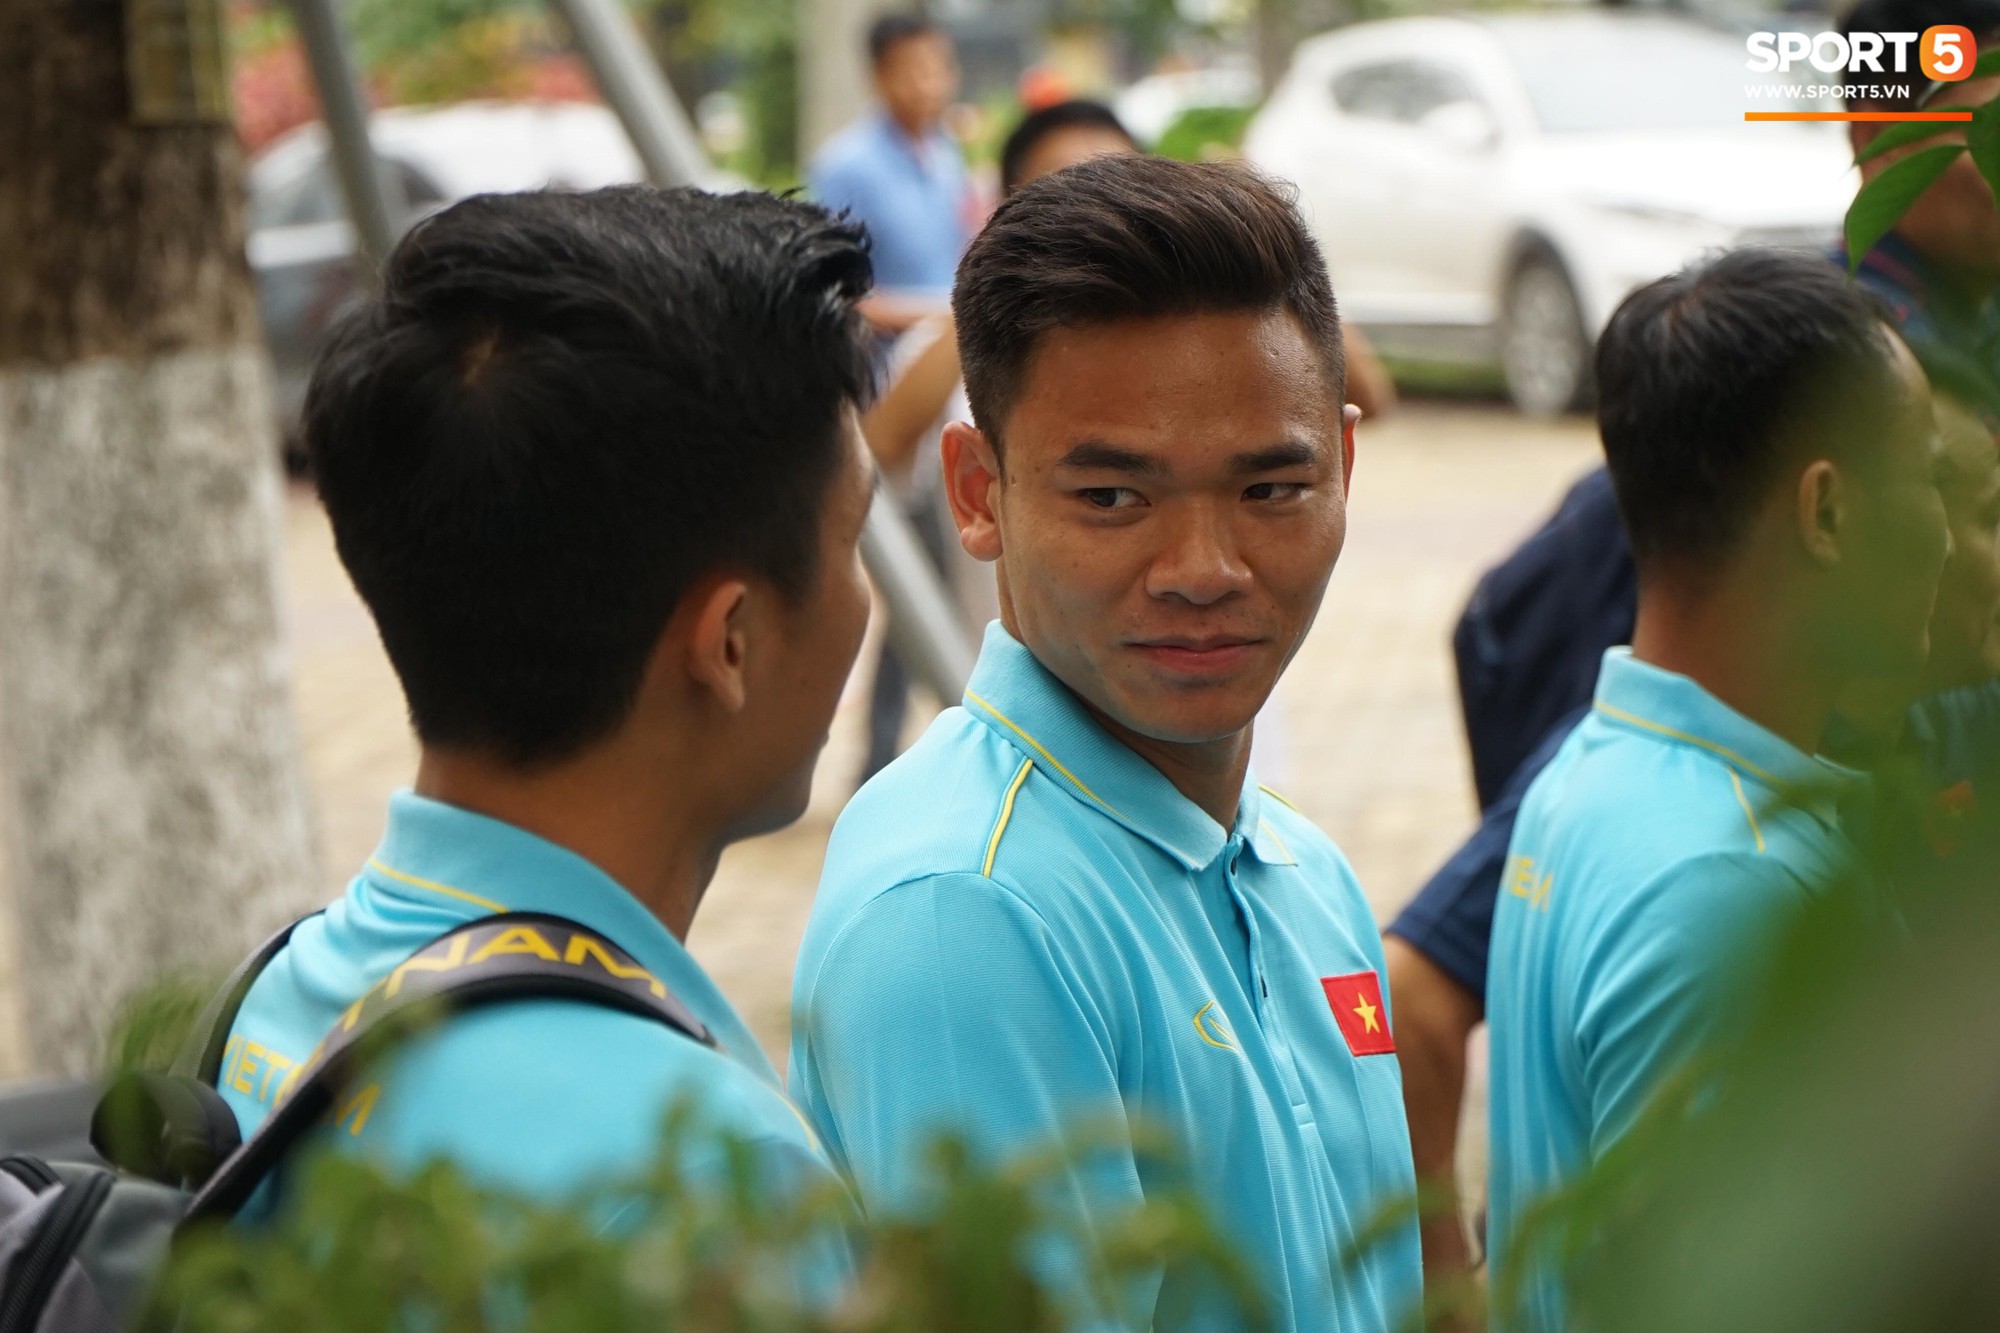 Dàn tuyển thủ Việt Nam bảnh bao hội quân chuẩn bị dự Kings Cup 2019 - Ảnh 7.